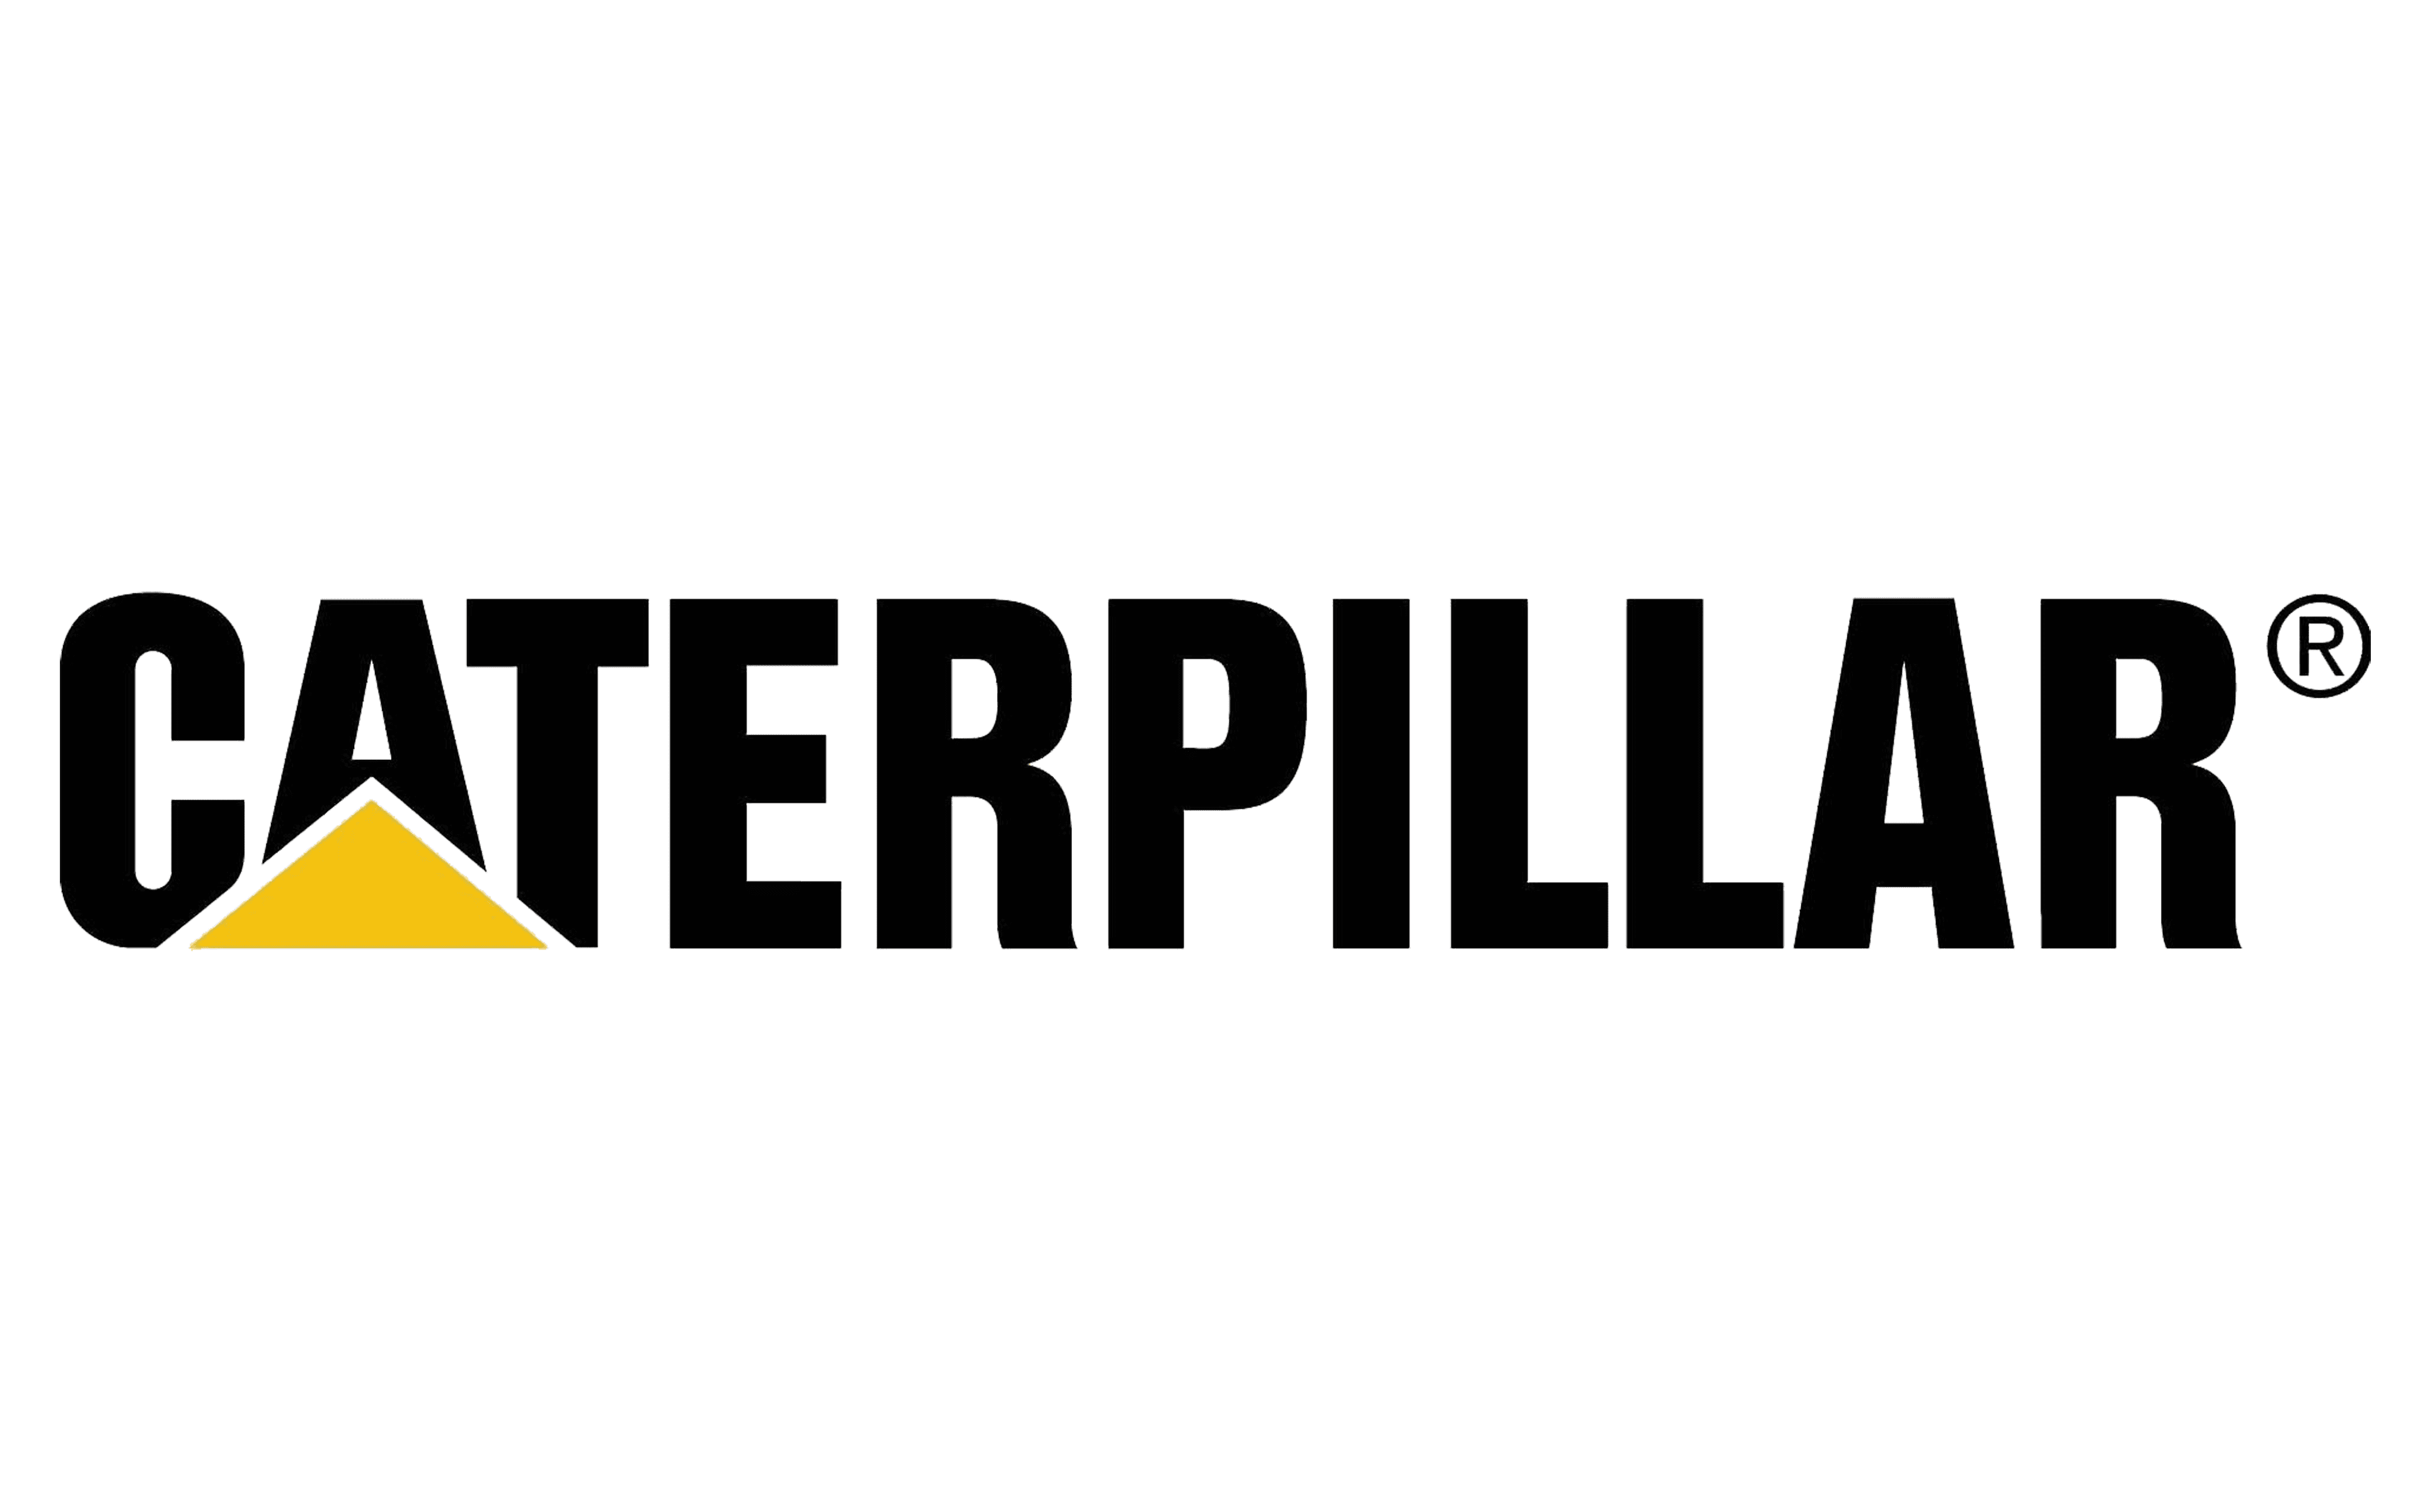 Caterpillar utilise le logiciel MemoryFlow pour digitaliser ses plans de prévention